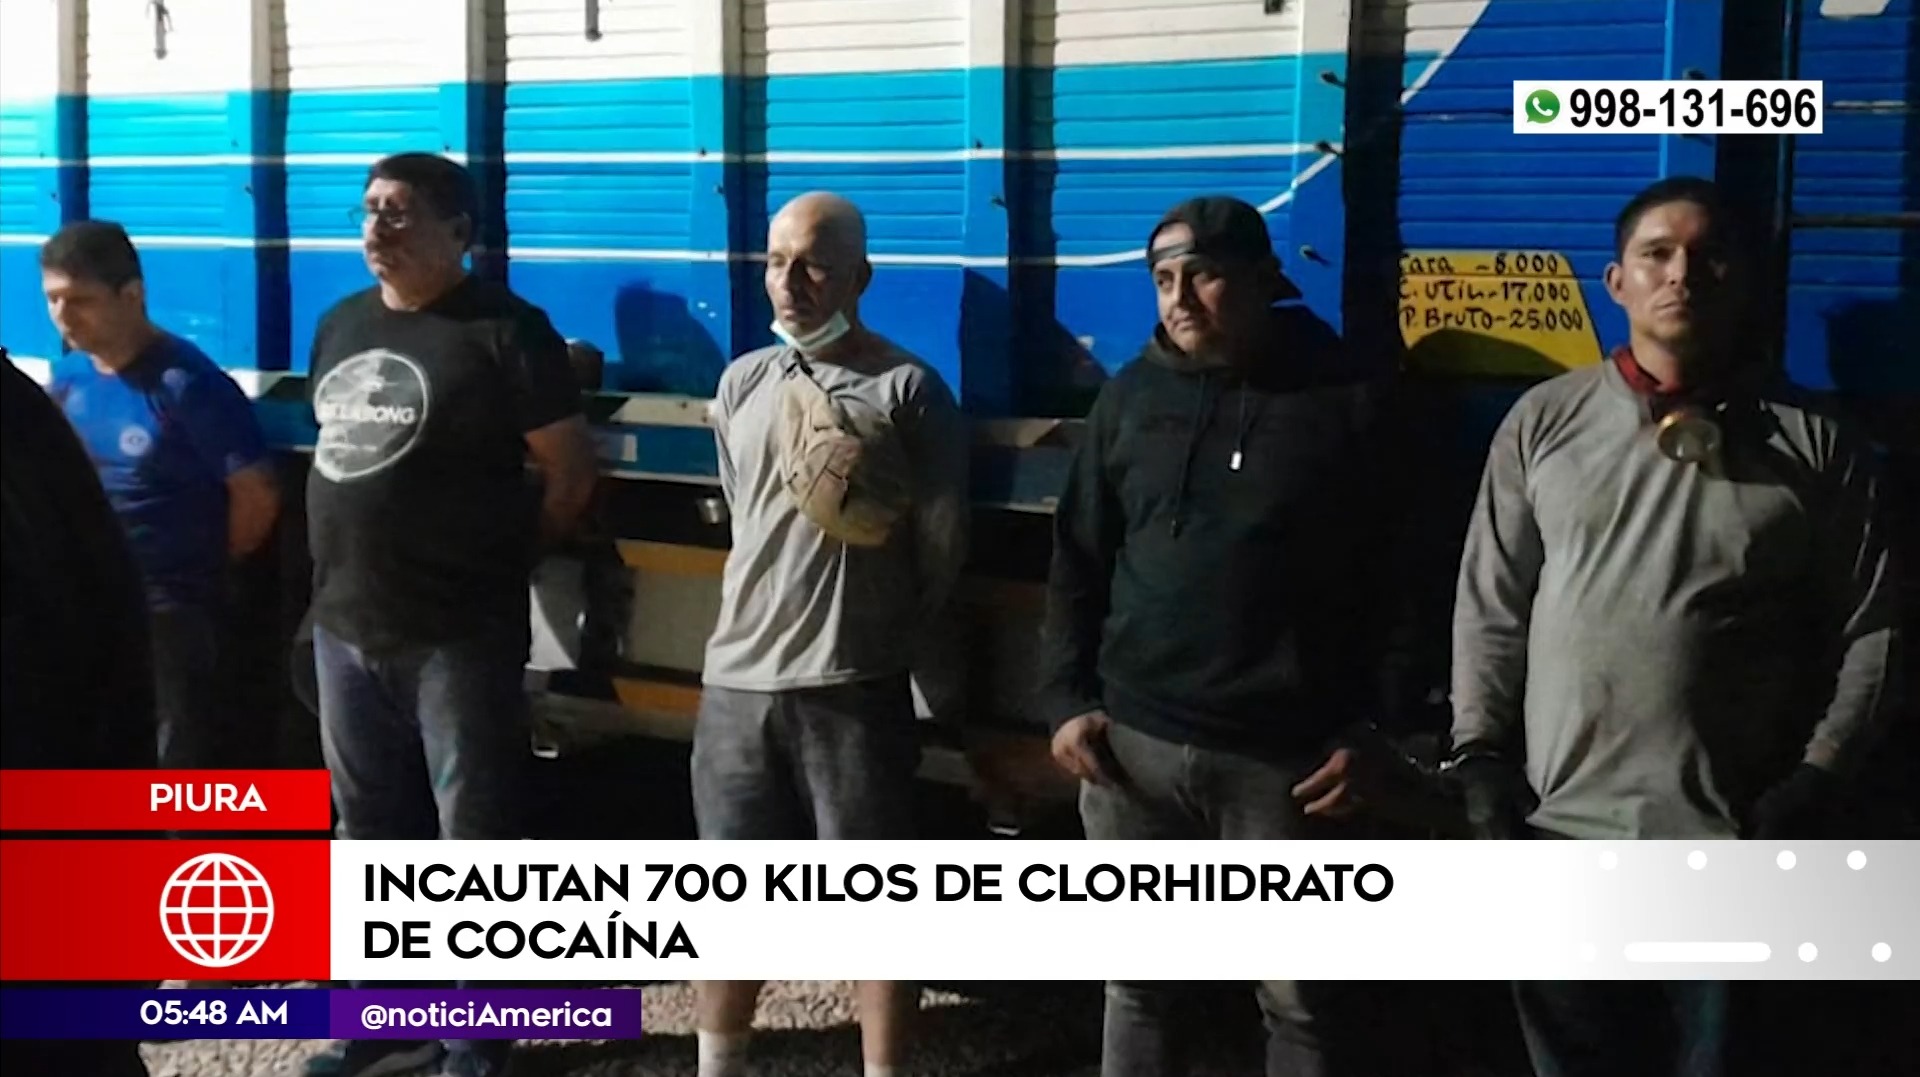 Incautan 700 kilos de clorhidrato de cocaína en Piura. Foto: América Noticias